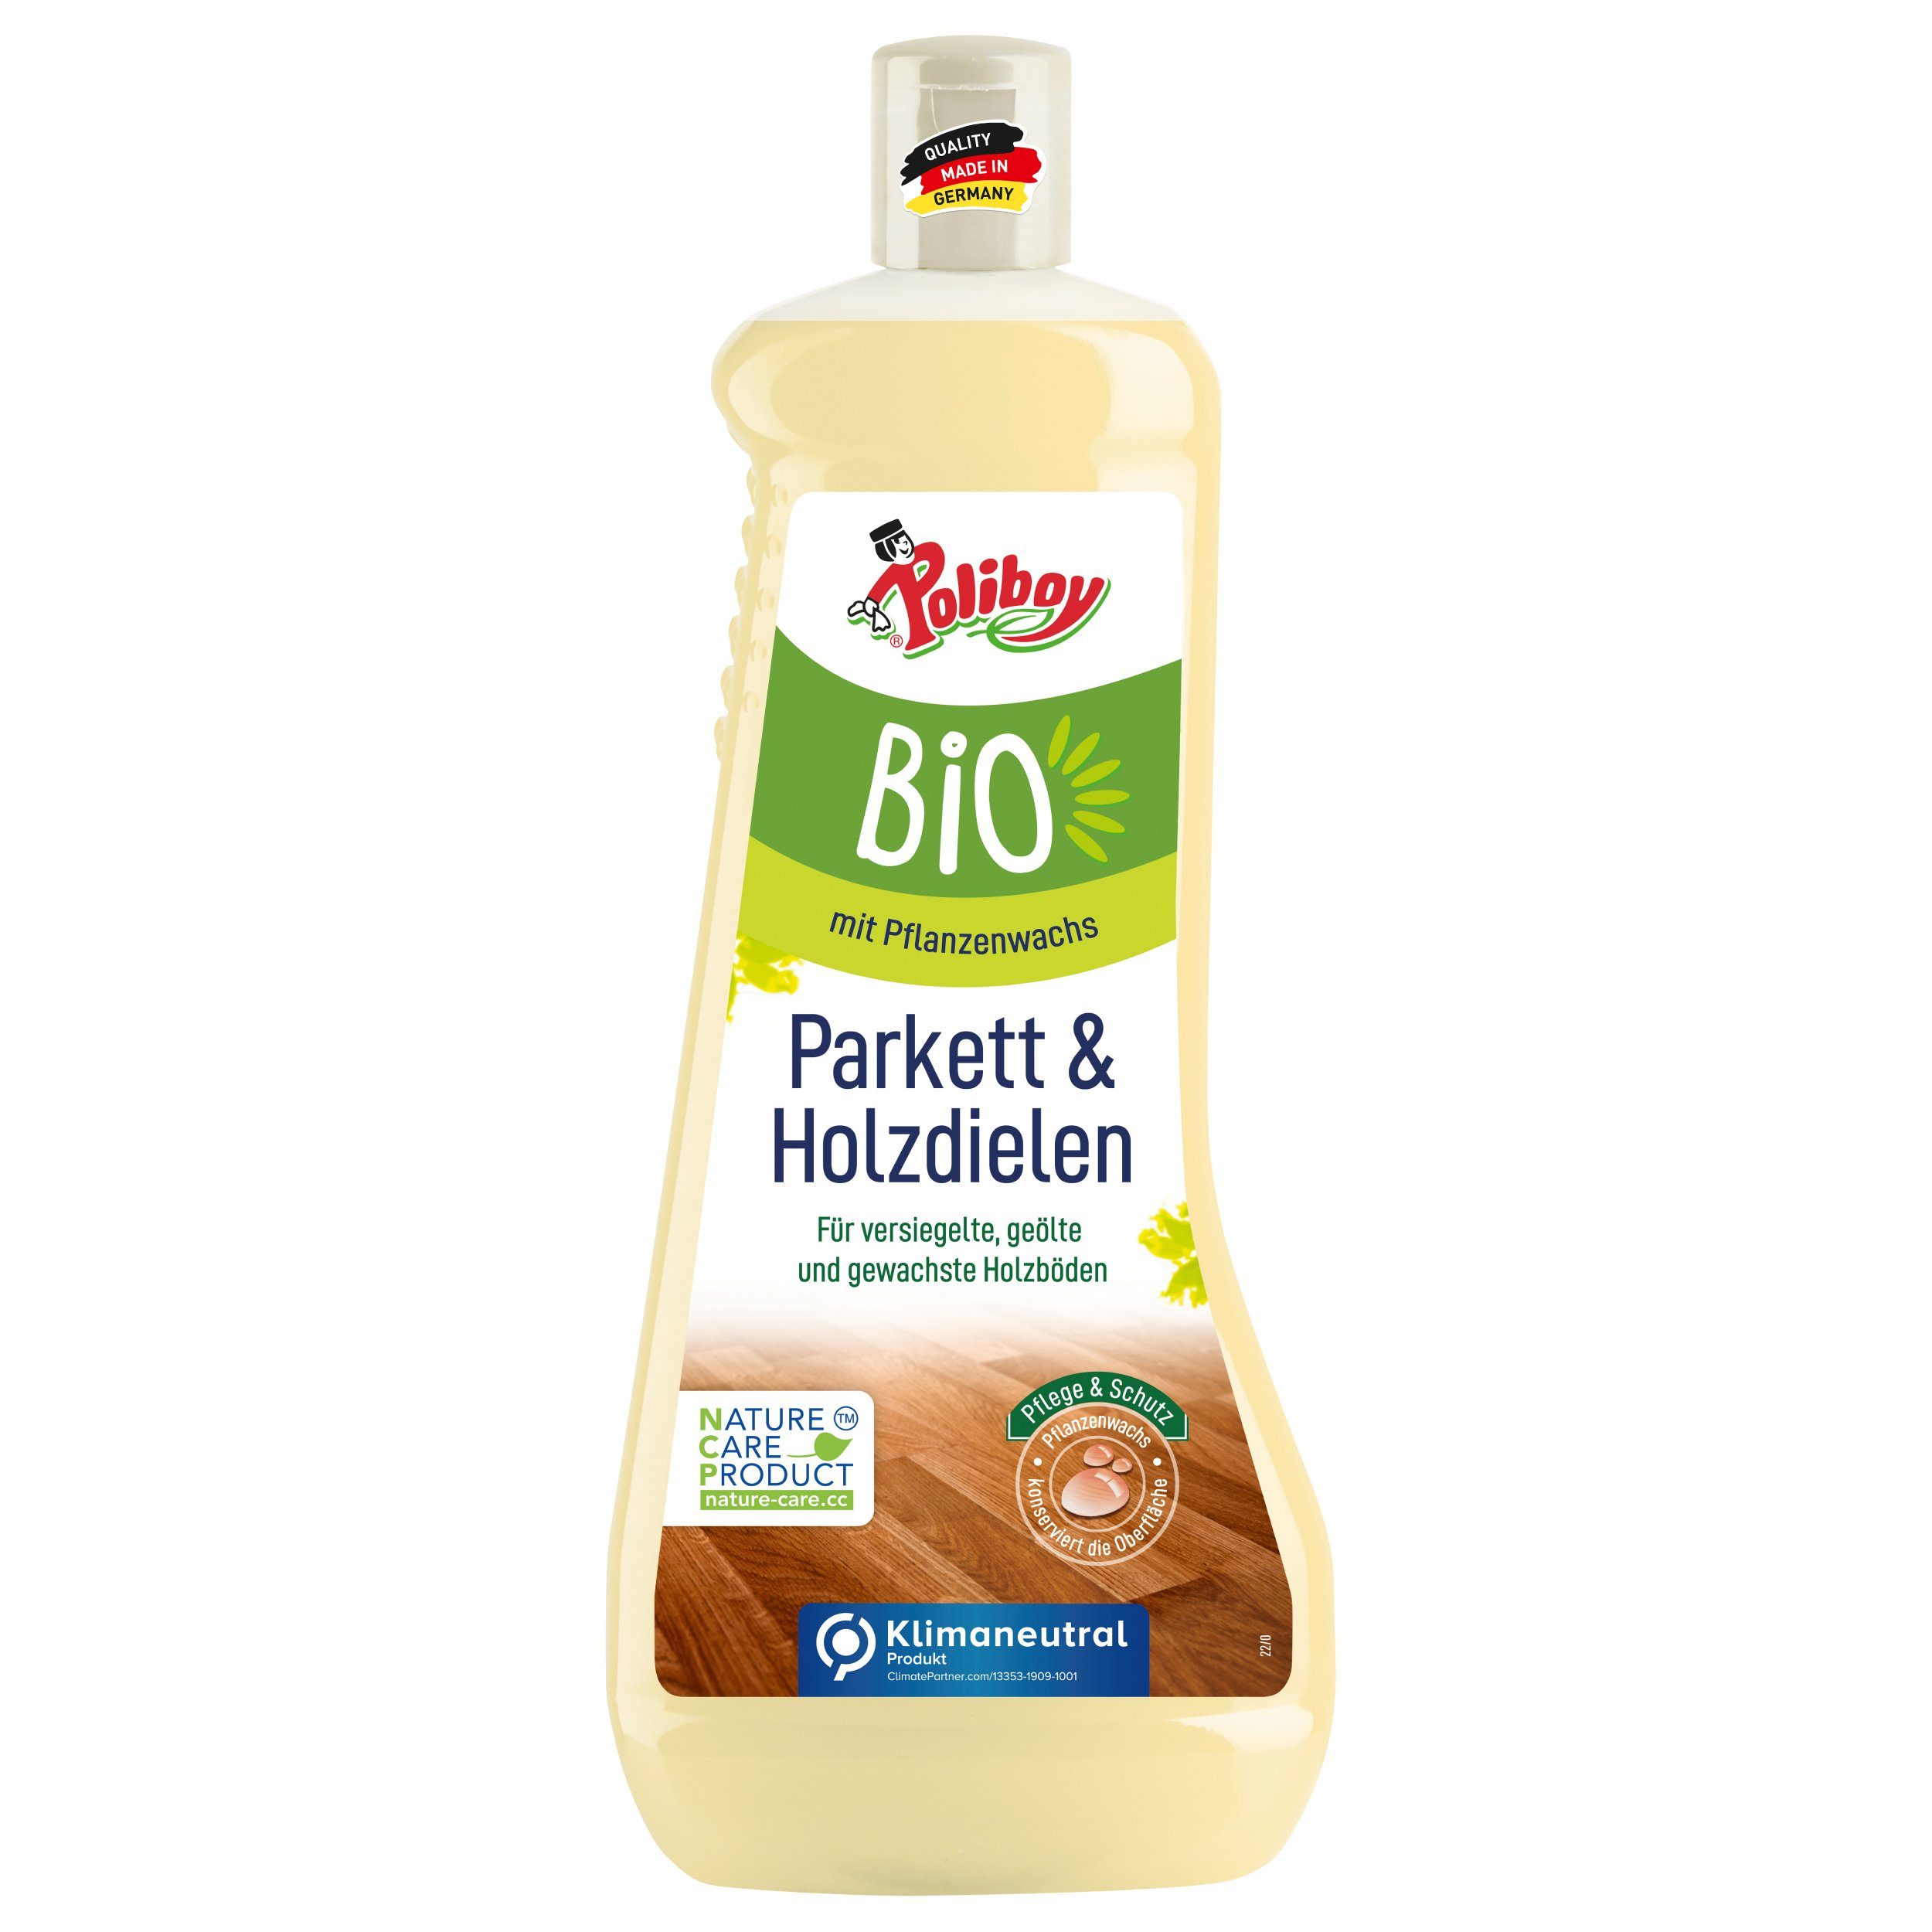 poliboy - 1 Liter - Bio Holzdielen Pflege Parkettreiniger (Pflege und Schutz für wertvolle Holzböden - Made in Germany)